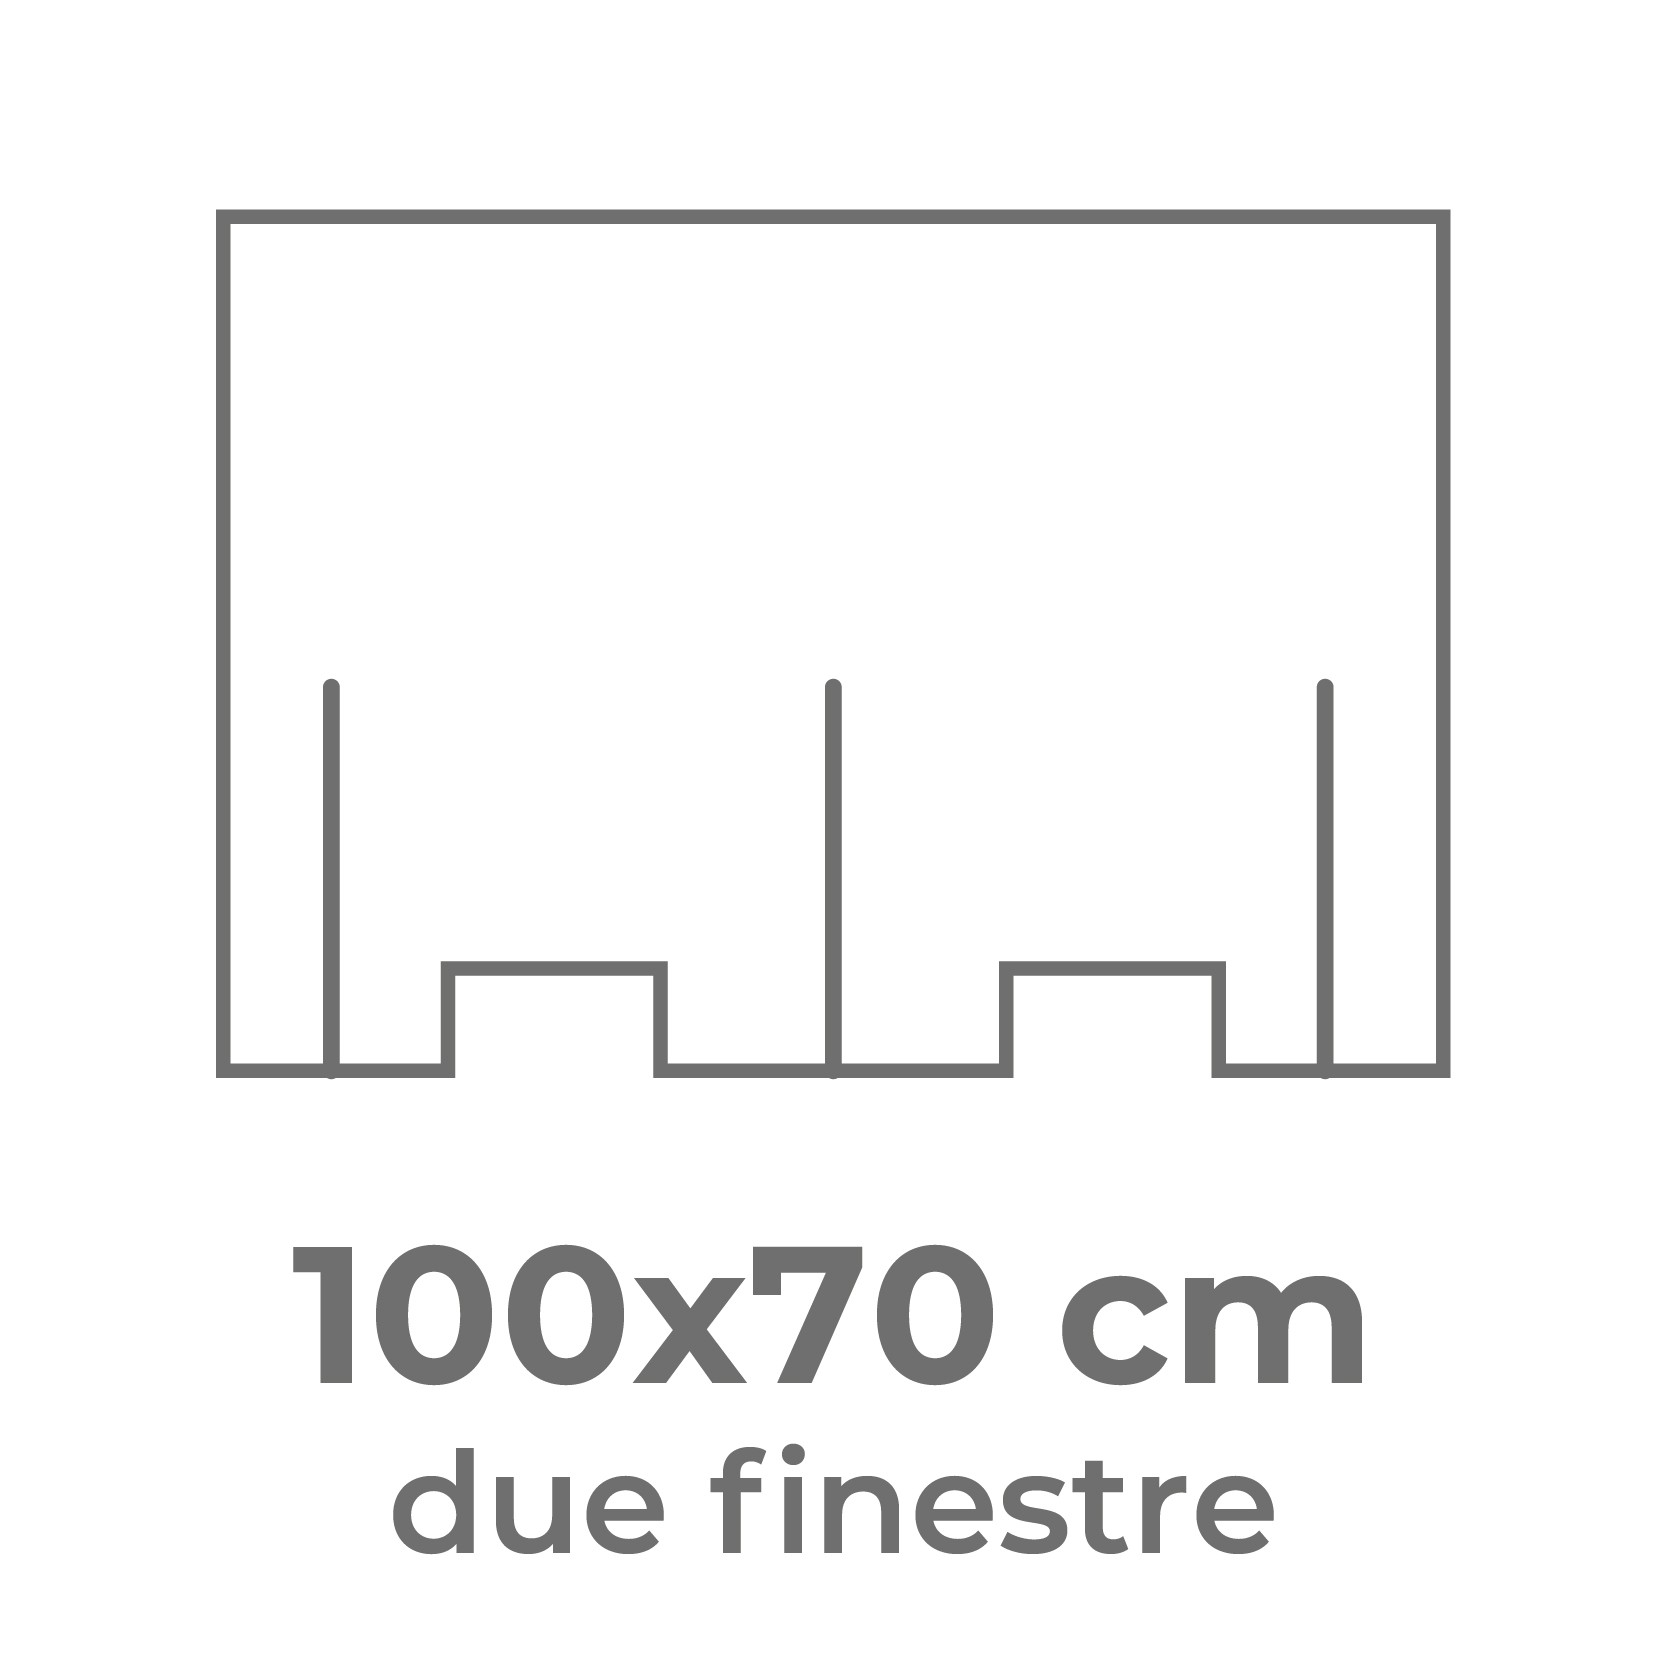 100x70 cm (uso doppio)